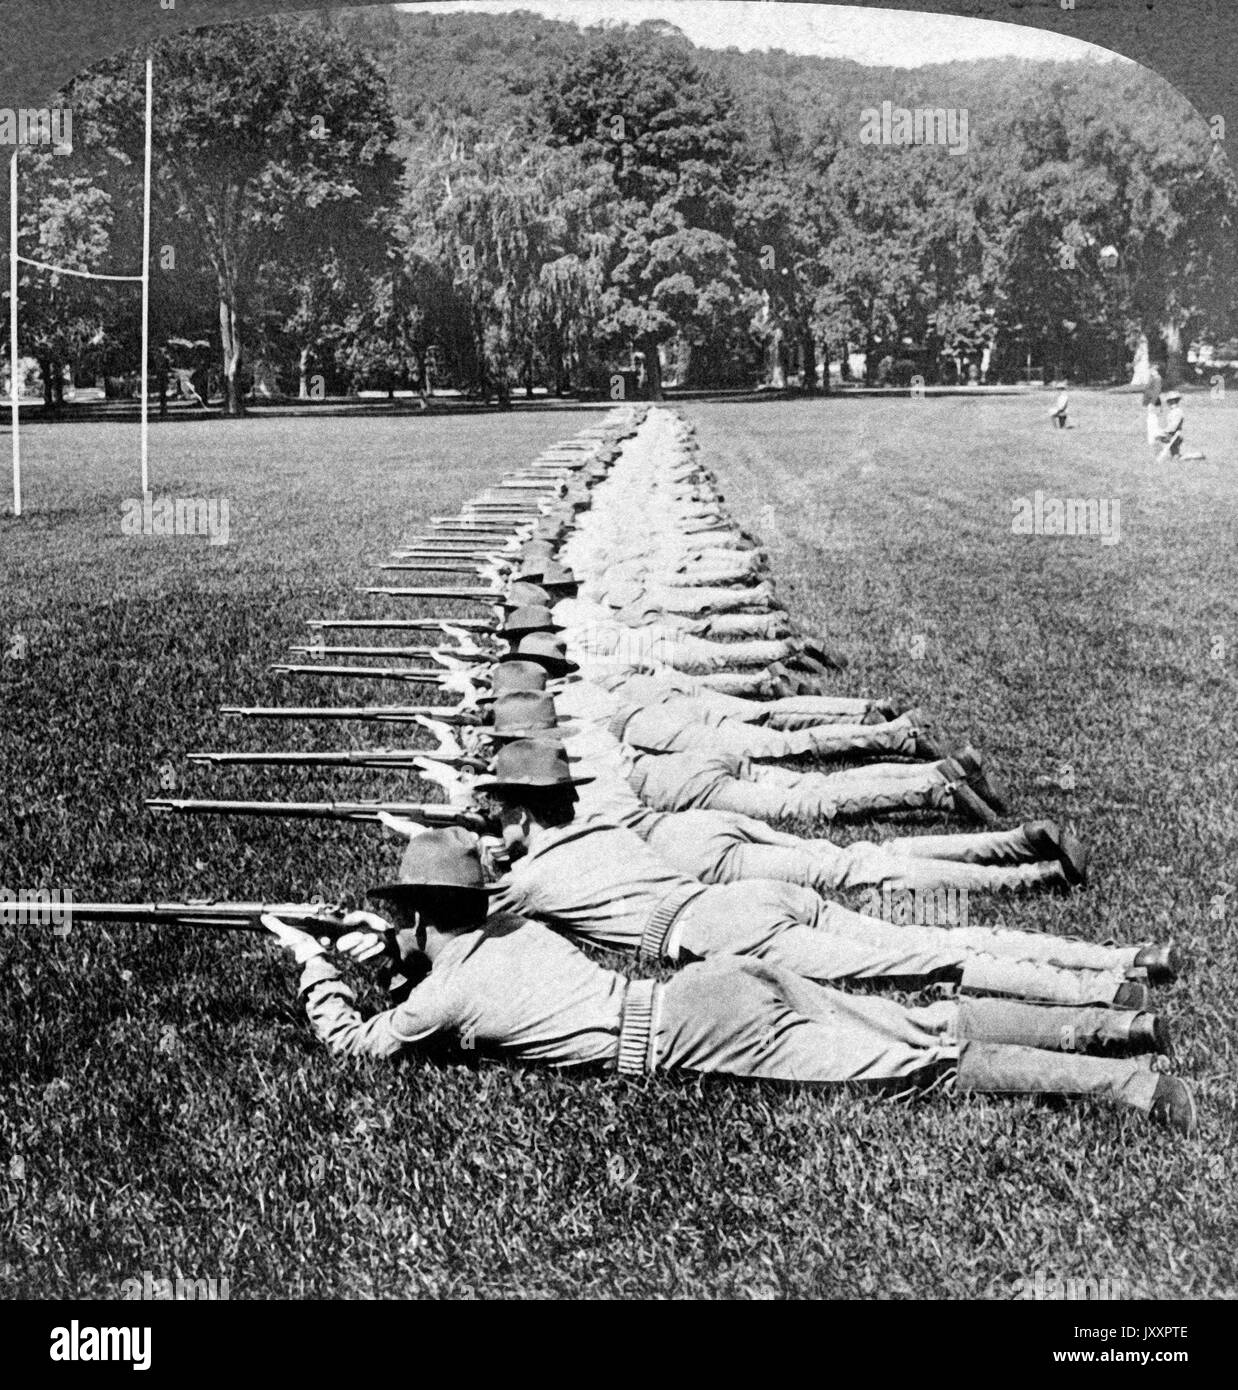 Übung, Scharmützel Kadetten der Militärakademie West Point, New York, USA 1900. Percer la ligne d'escarmouche, les cadets de l'académie militaire de West Point, New York, USA 1900. Banque D'Images